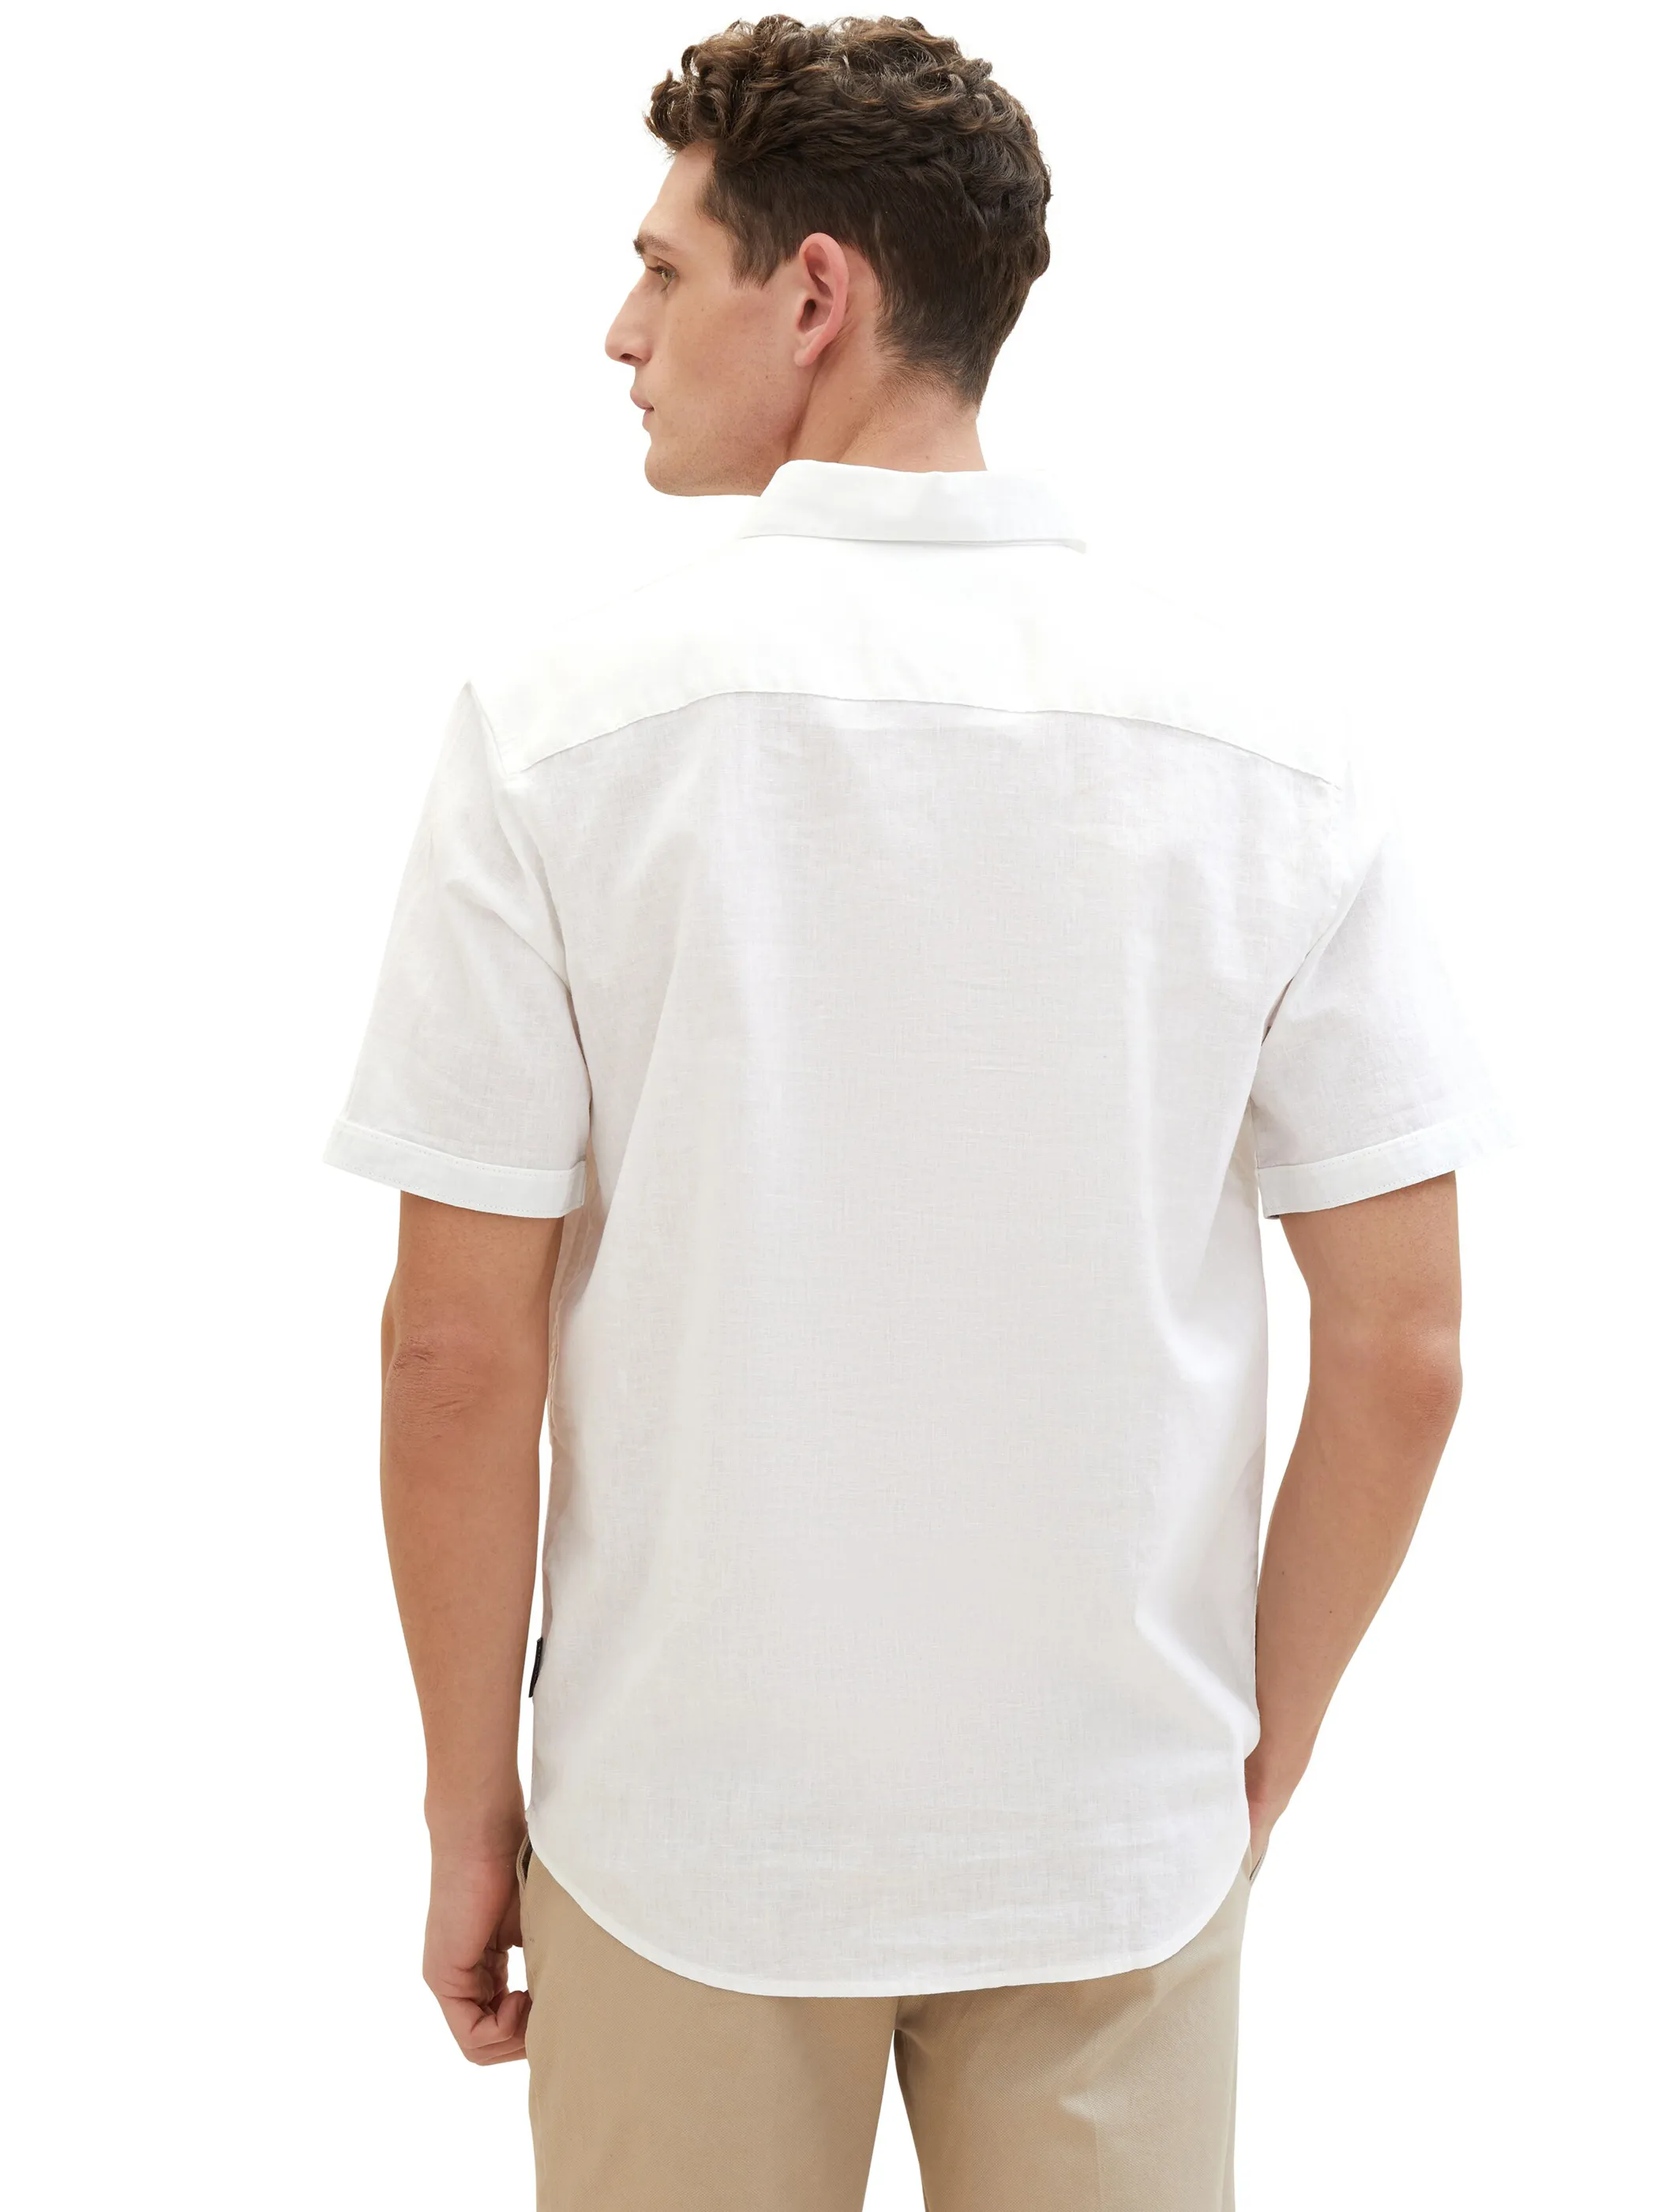 Tom Tailor 1042351 NOS cotton linen shirt Weiß 890939 20000 2